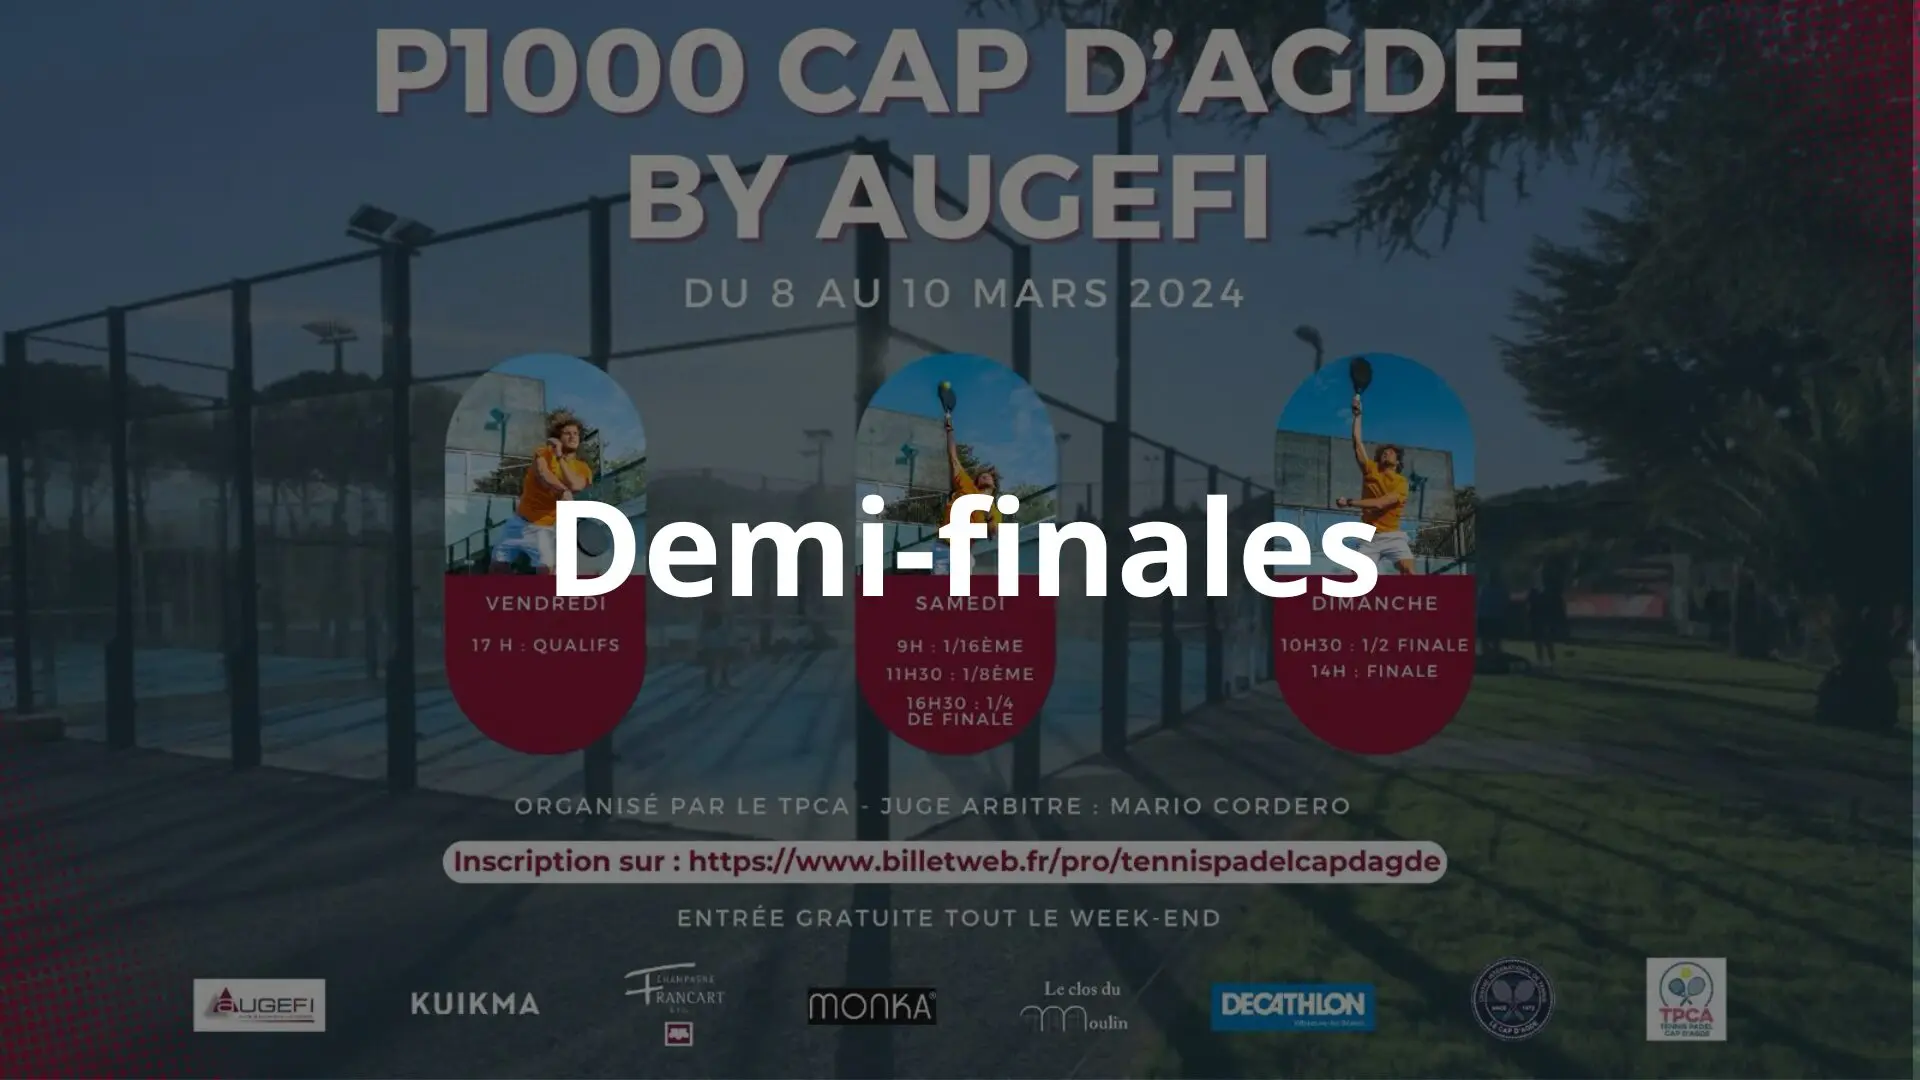 P1000 miesten Cap d’Agde – Heavy tänä aamuna semifinaalissa